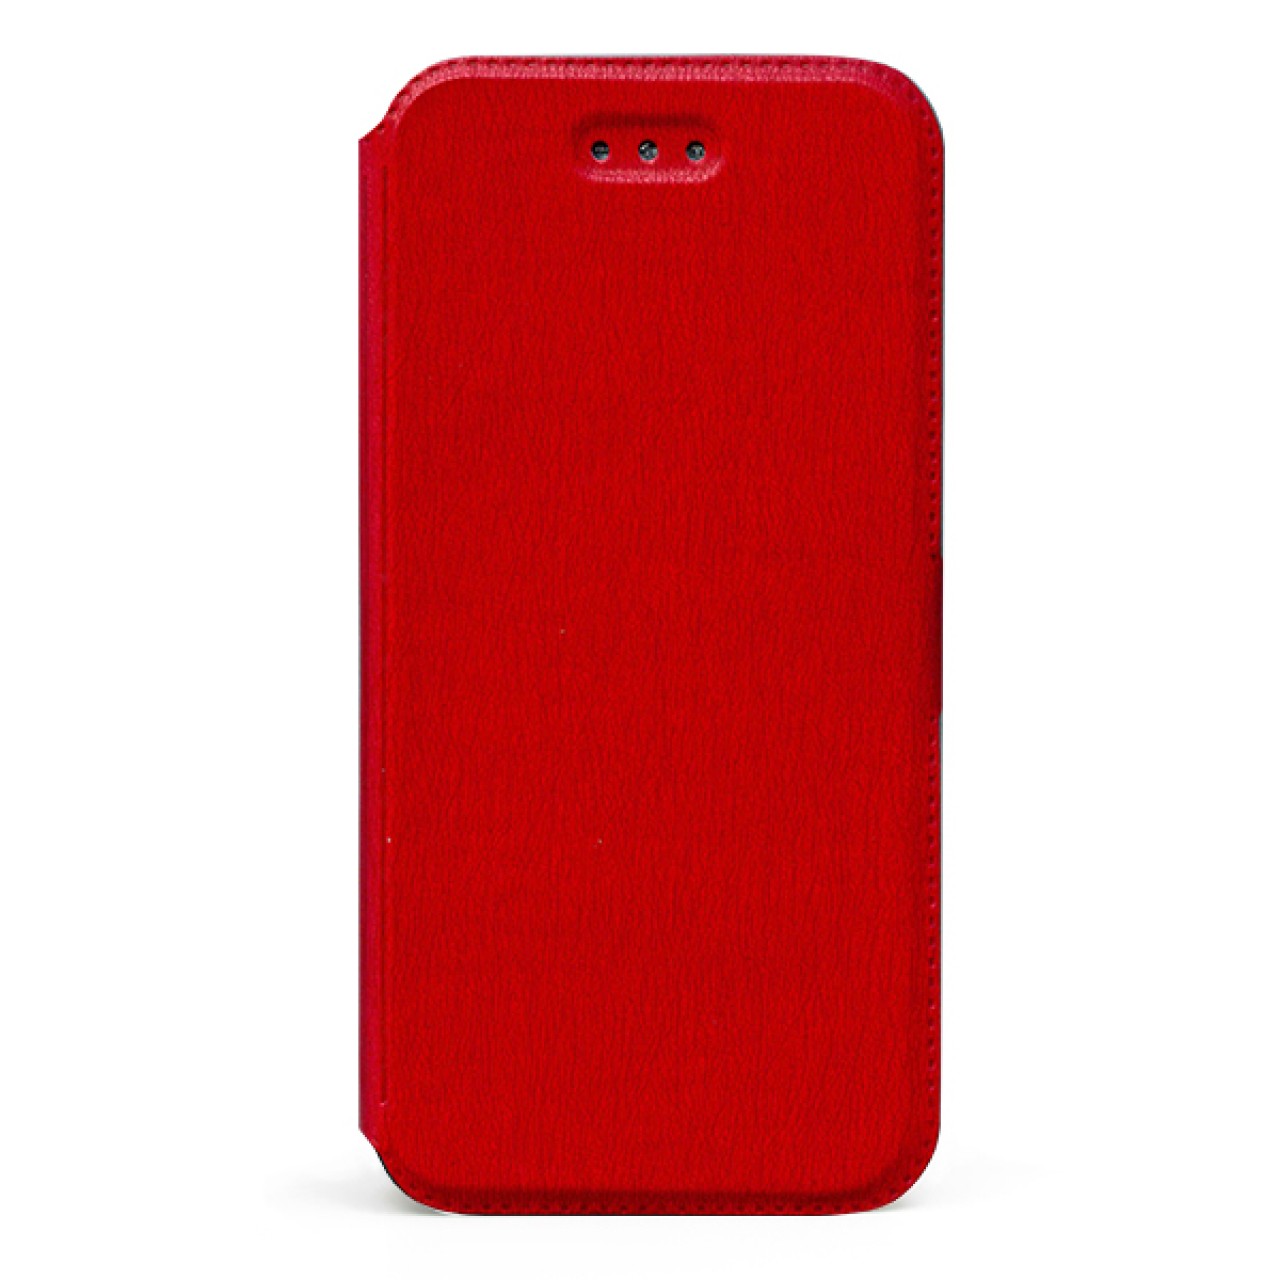 Θήκη Προστασίας Samsung Galaxy A20s - Flip Case - Red